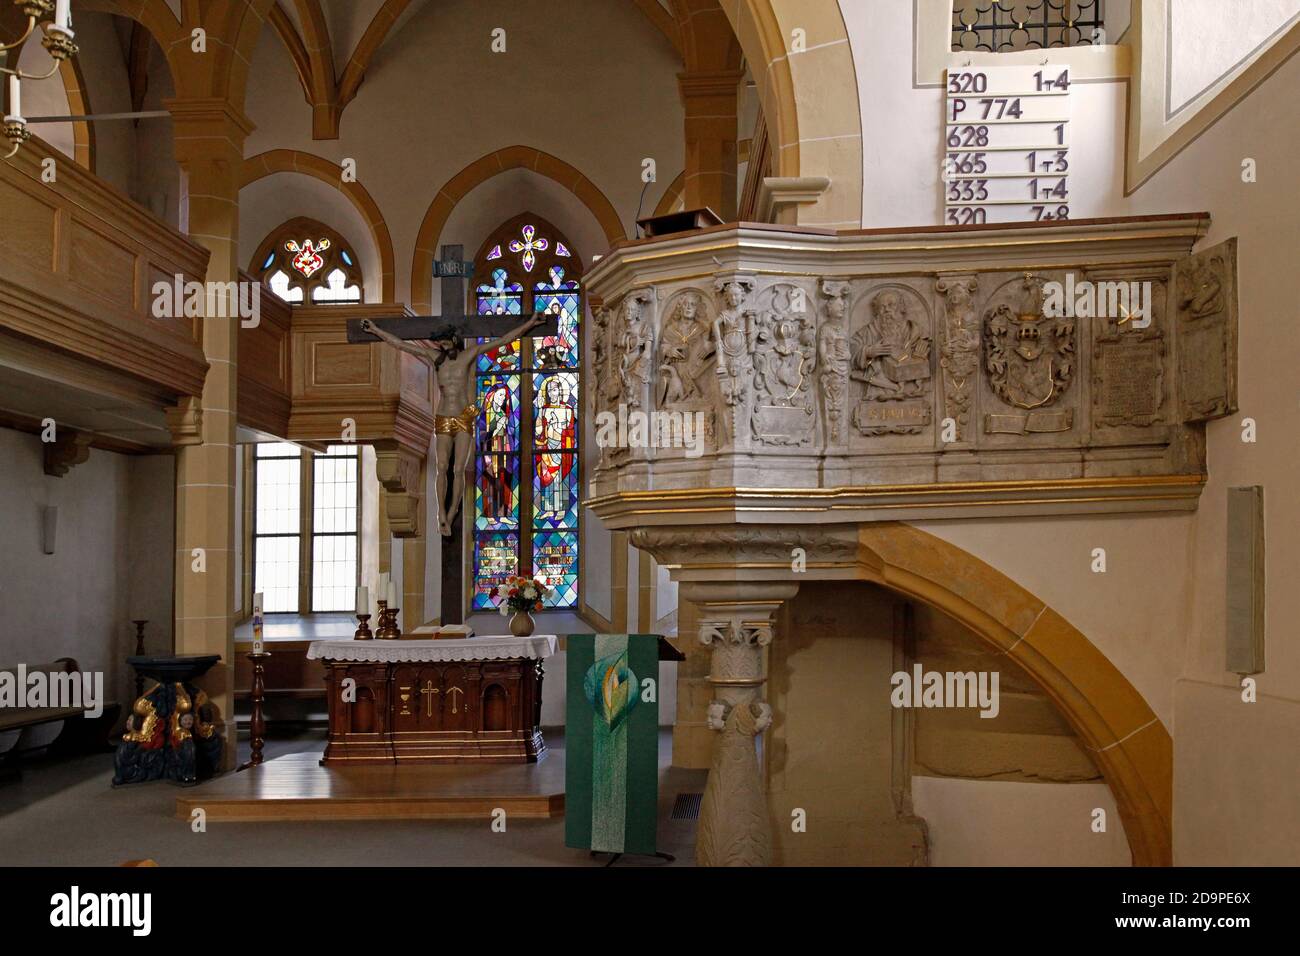 Protestant town church St. Salvator, interior shot, Neckarbischofsheim, Baden-Württemberg, Germany Stock Photo